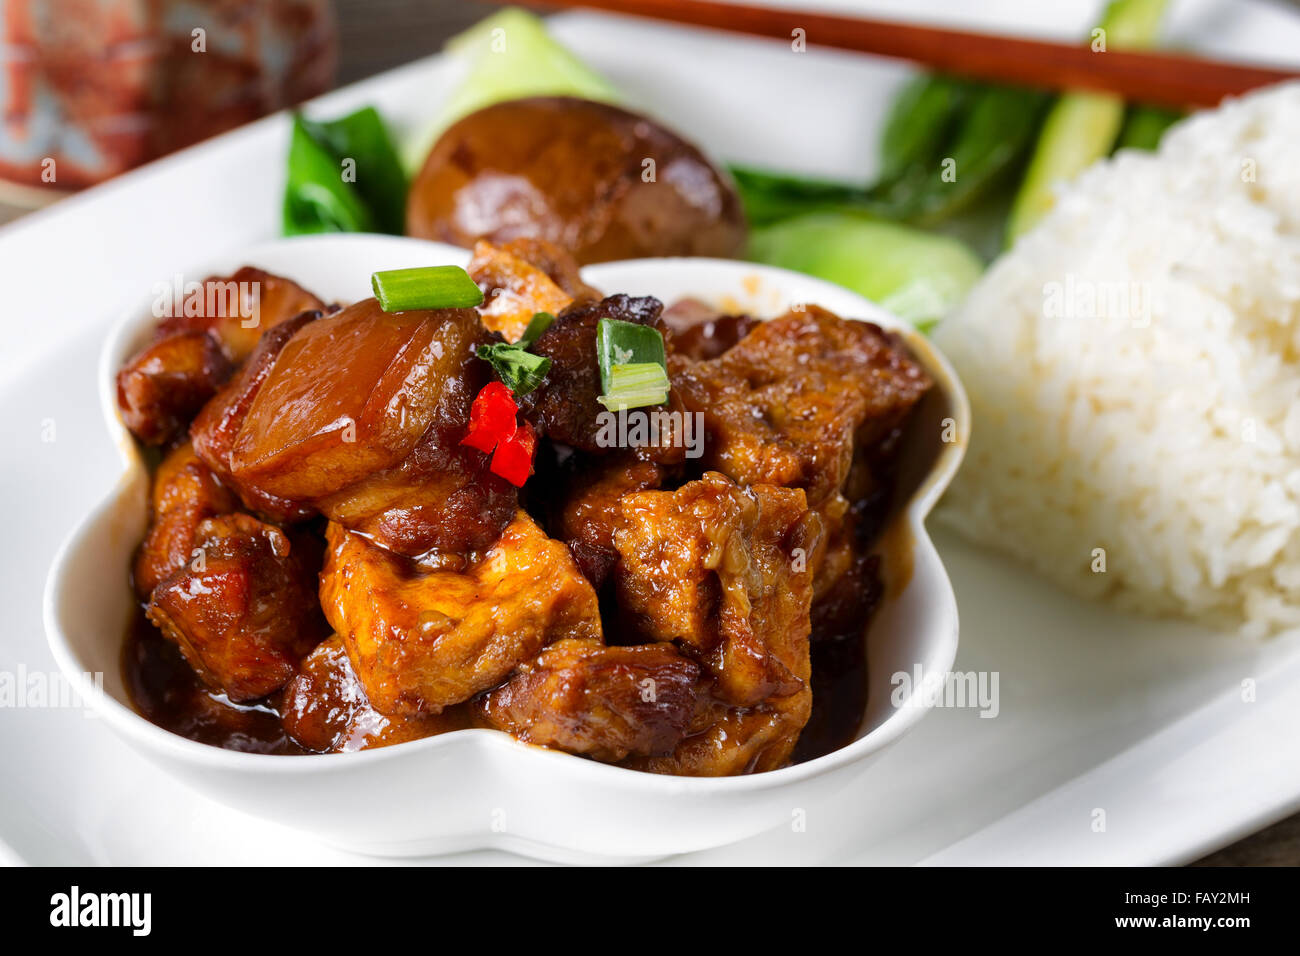 Gros plan d'une vue de face d'un plat chinois avec le tofu et les tranches de viande, la sauce de soja, de riz, d'œufs, de garnitures, de bok choy et de baguettes. Banque D'Images